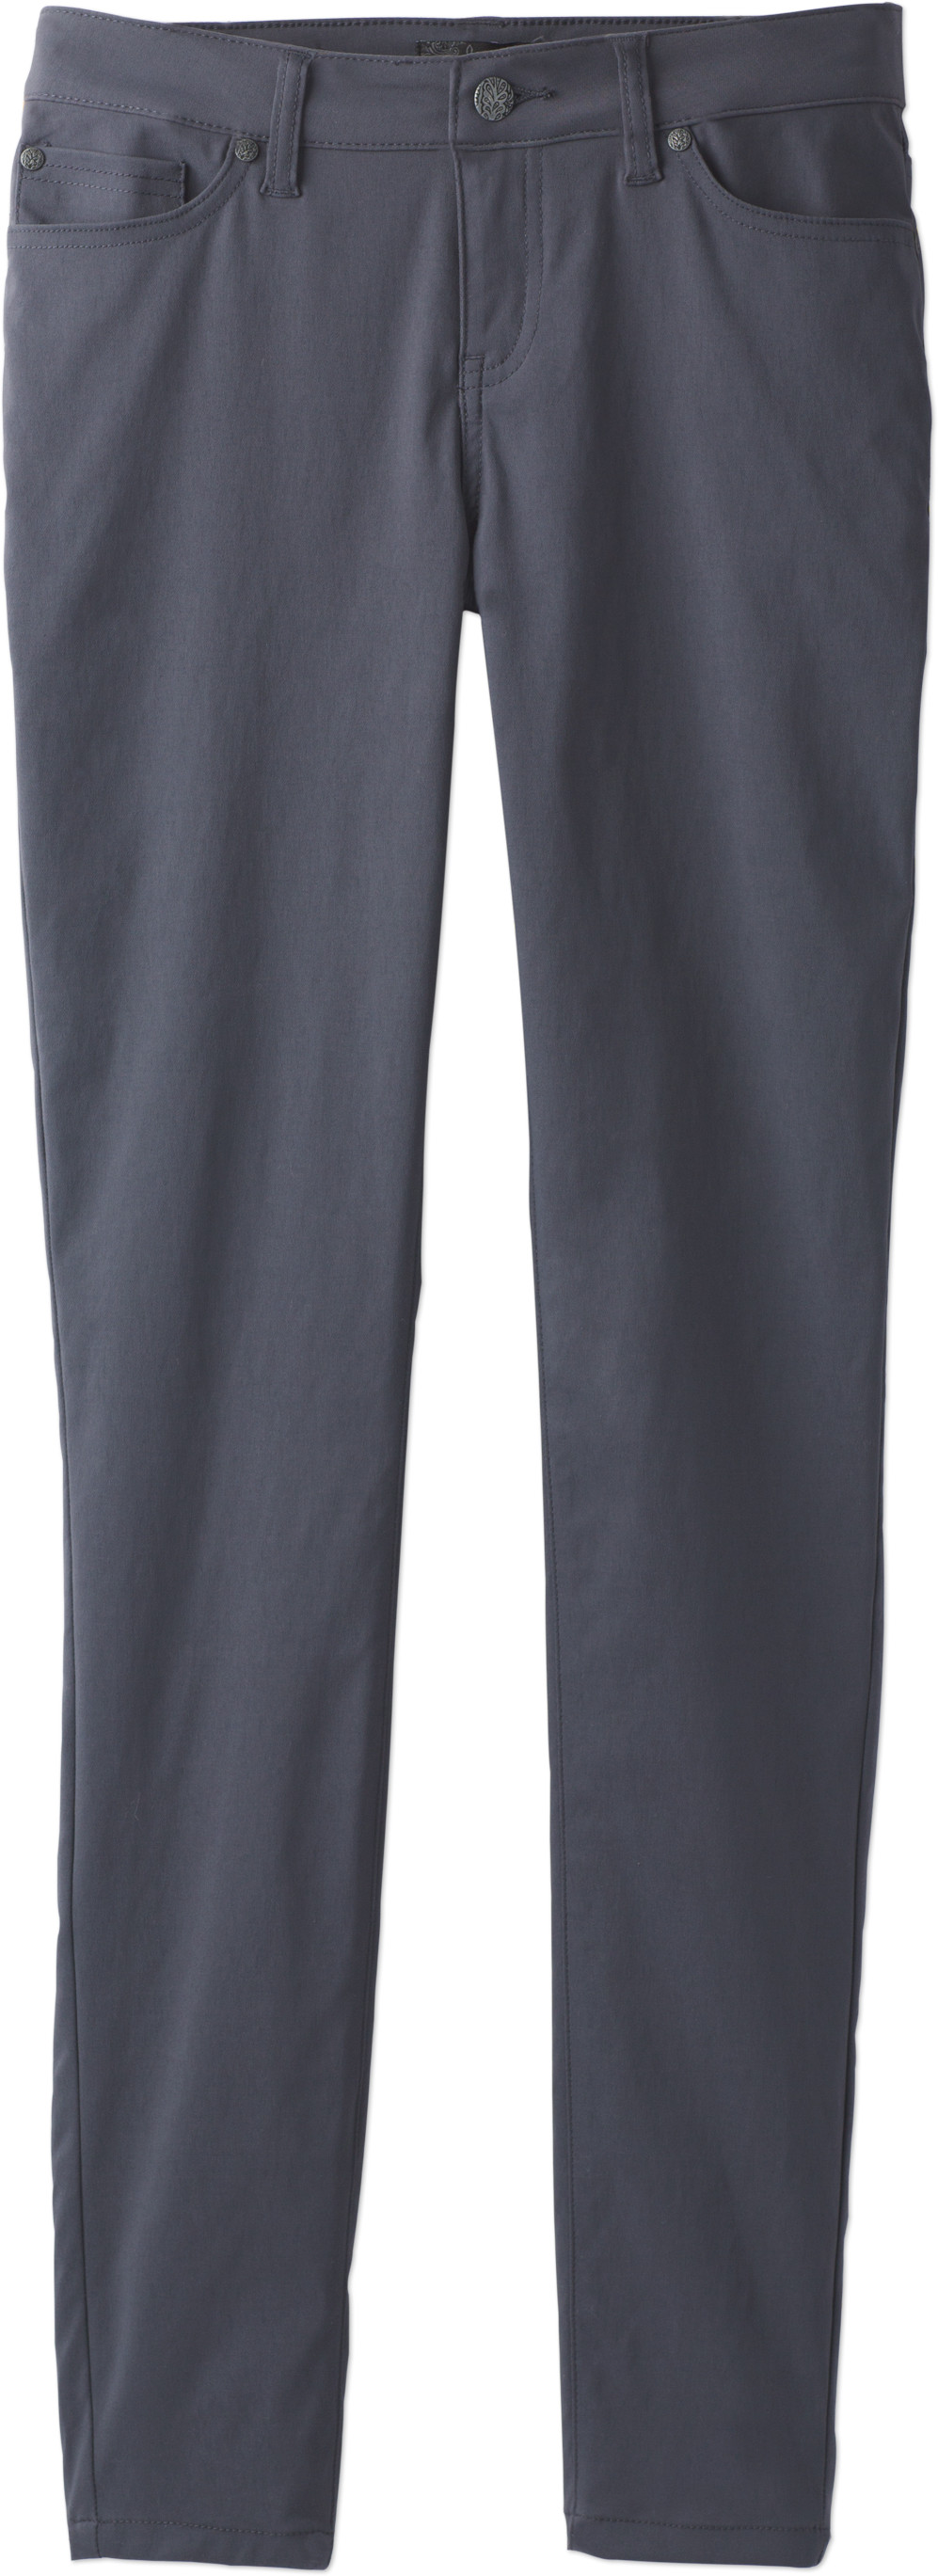 PRANA Briann Tall Inseam Women's Pants Sz 2 Coal W4317TL08 (New)